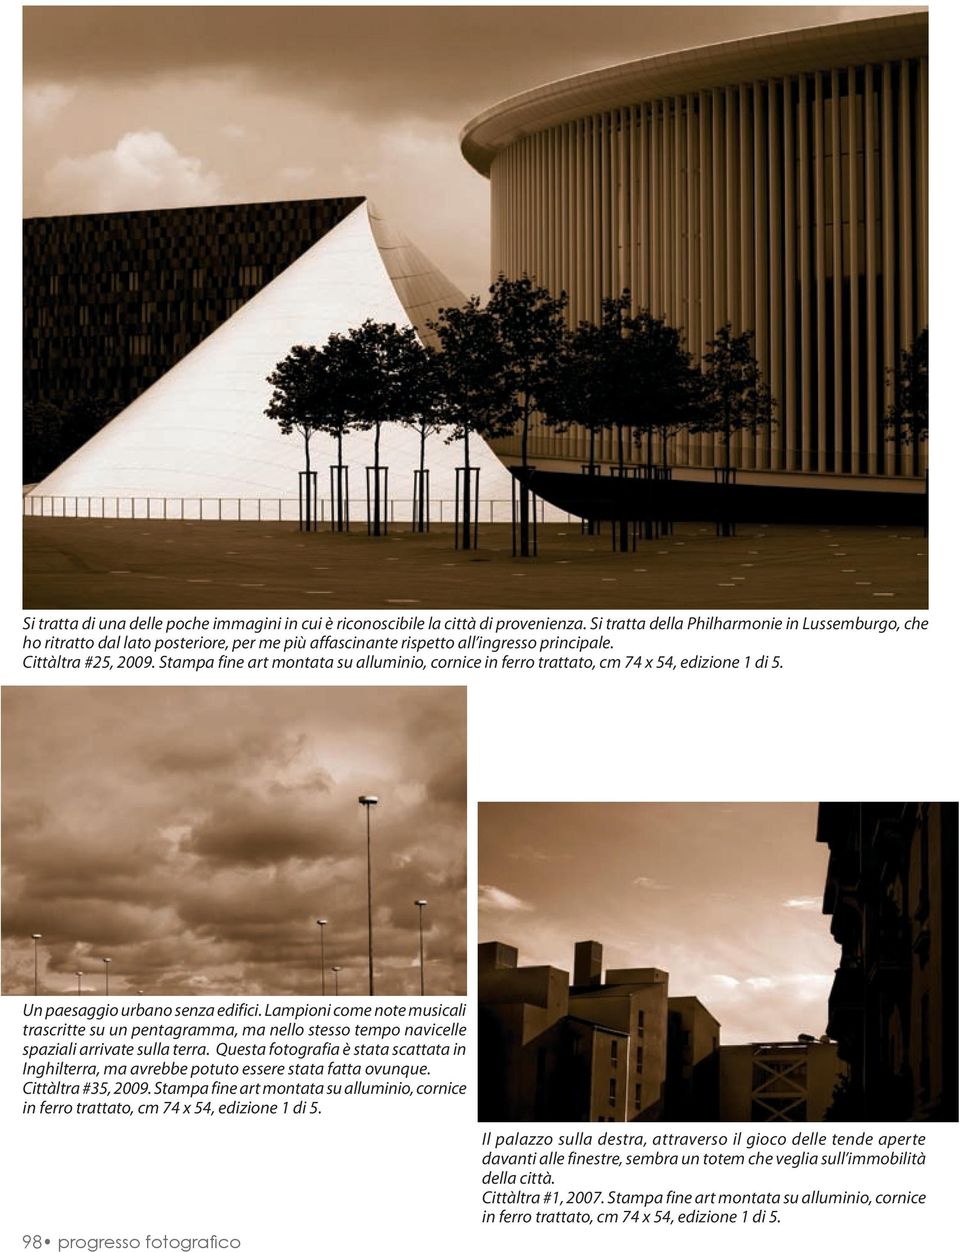 Stampa fine art montata su alluminio, cornice in ferro trattato, cm 74 x 54, edizione 1 di 5. Un paesaggio urbano senza edifici.